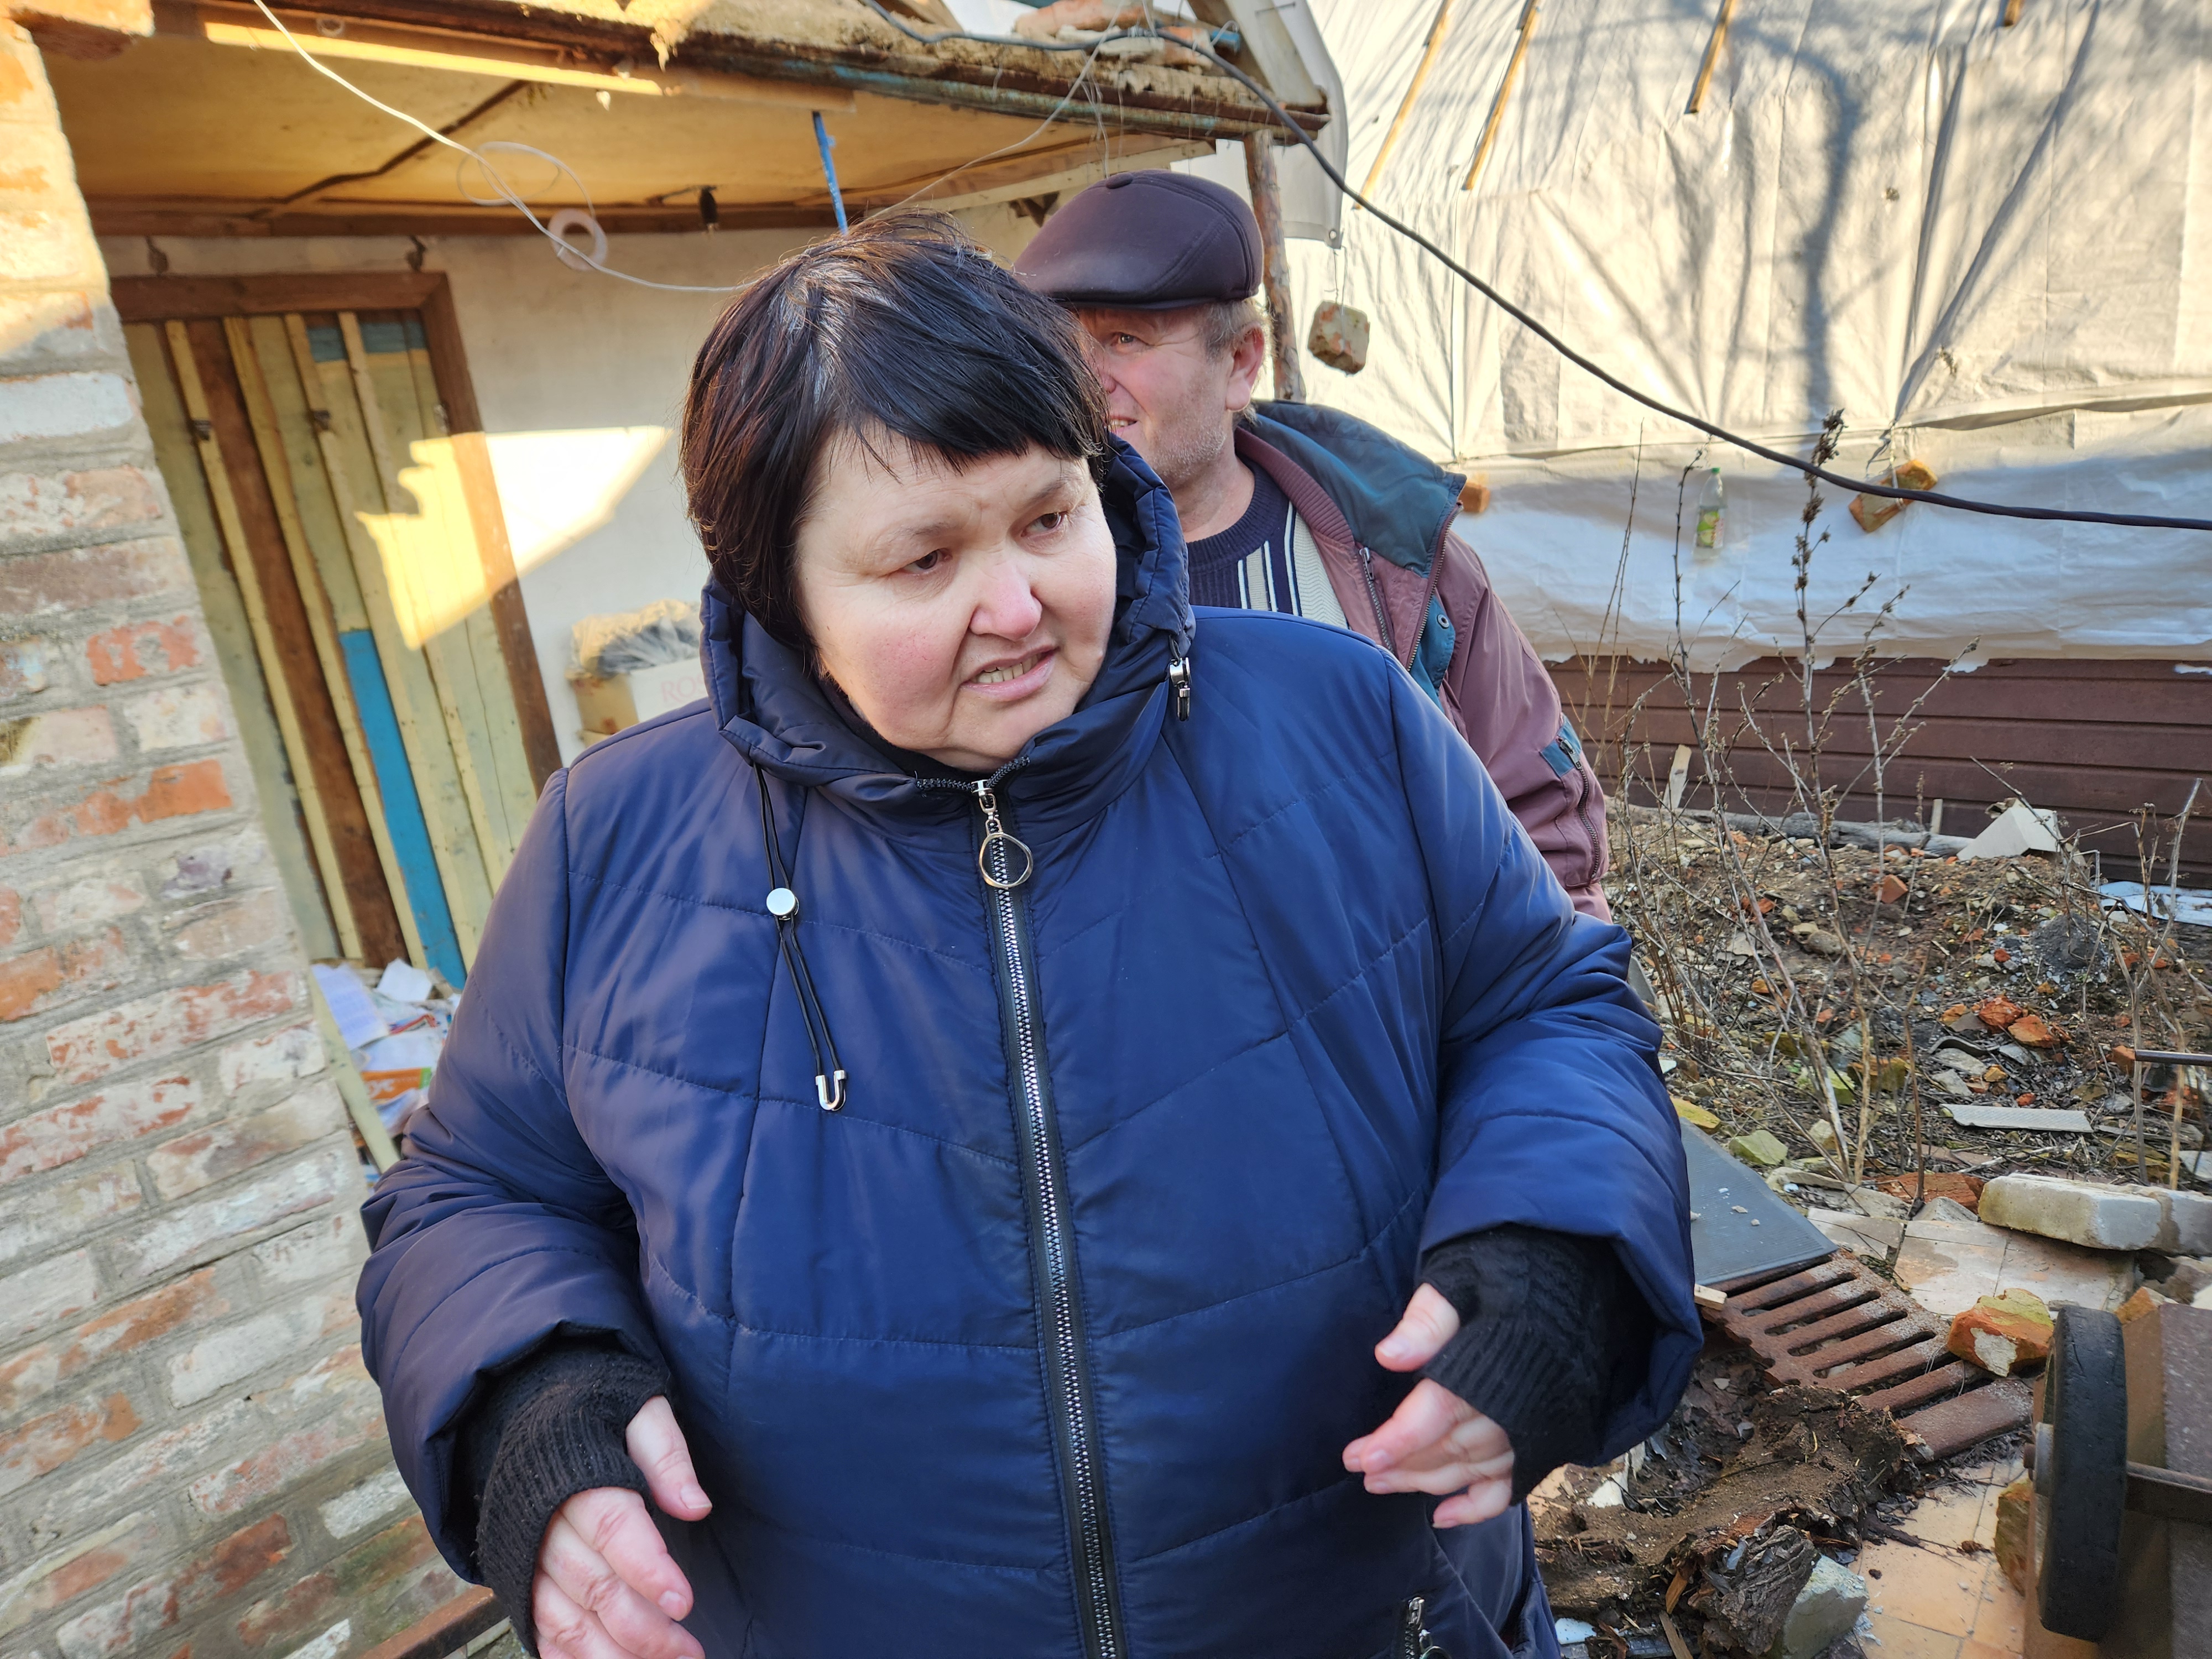 Inna Sirinok y su marido Yurii inspeccionan su casa destruida en el pueblo de Preobrazhenka, en el este de Ucrania. "Sinceramente, no tenemos fuerzas para recuperarnos", dijo Sirinok, por la considerable cantidad de daños sufridos en la casa. "Tenemos que empezar de nuevo", añadió Yurii, de 55 años. "No tenemos fuerzas. Somos mayores", apuntó. (Foto: GSR /Chris Herlinger)